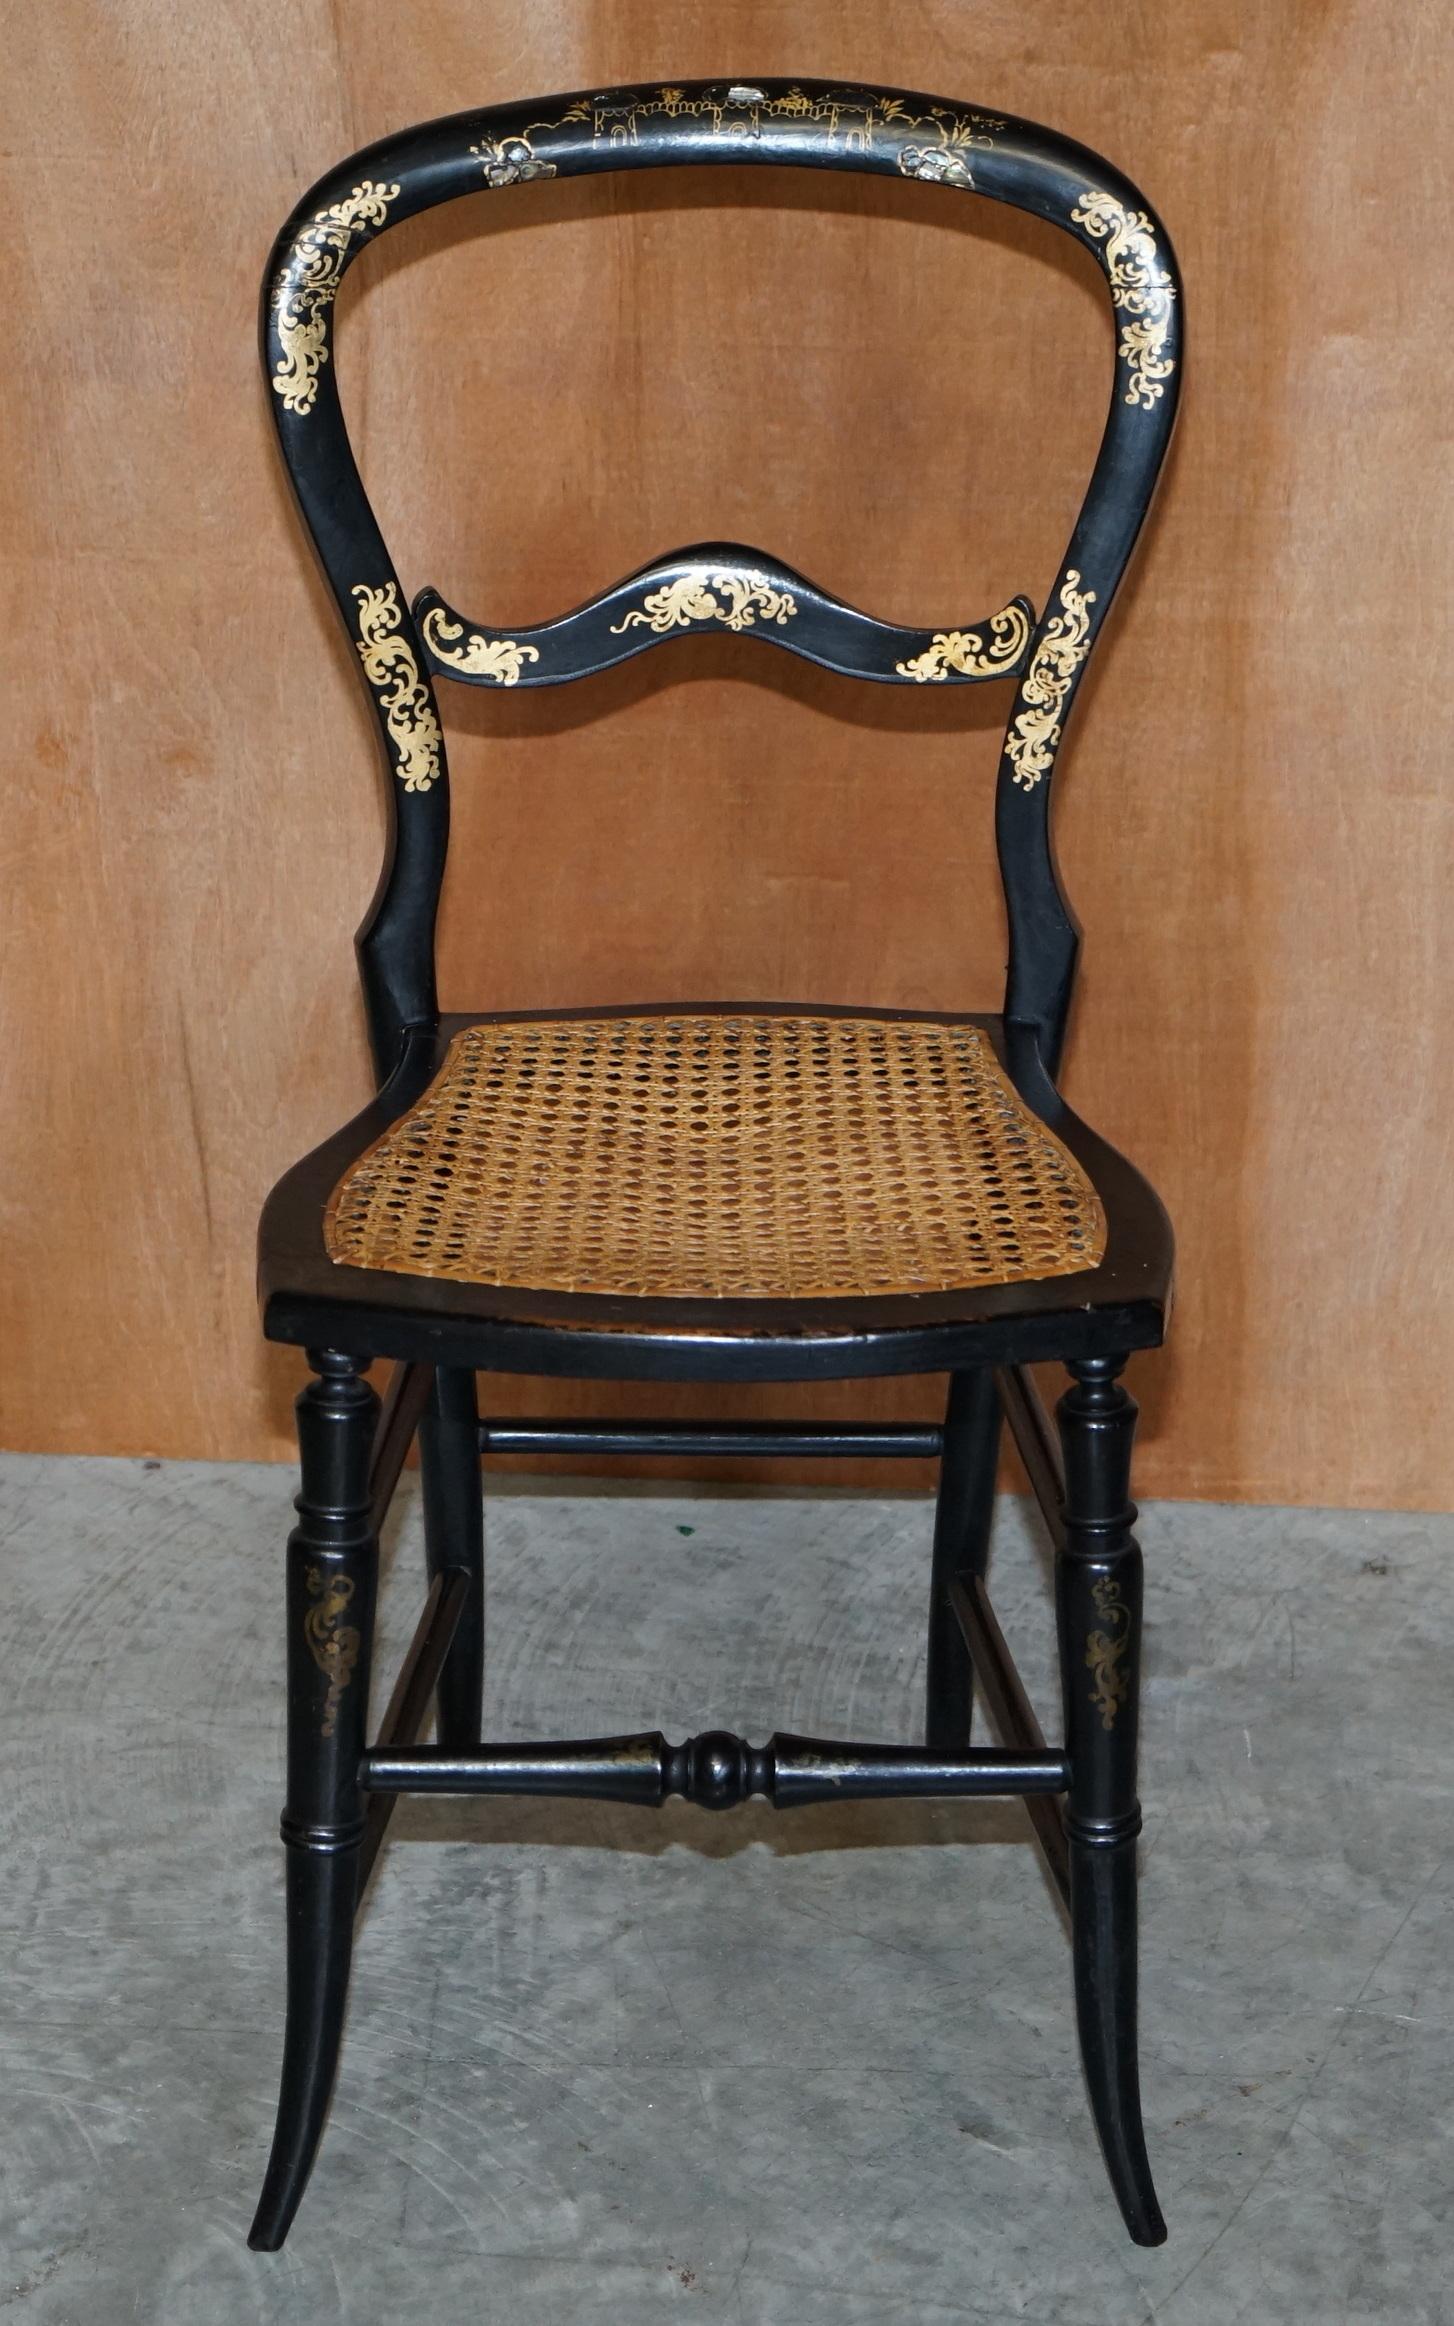 Wir freuen uns, diesen exquisiten originalen Regency-Stuhl von circa 1815 mit Blattgoldbemalung und Perlmuttintarsien zum Verkauf anbieten zu können.

Eine sehr gut aussehende gut gemacht und dekorative Stühle, das ist ein guter Sammler finden,